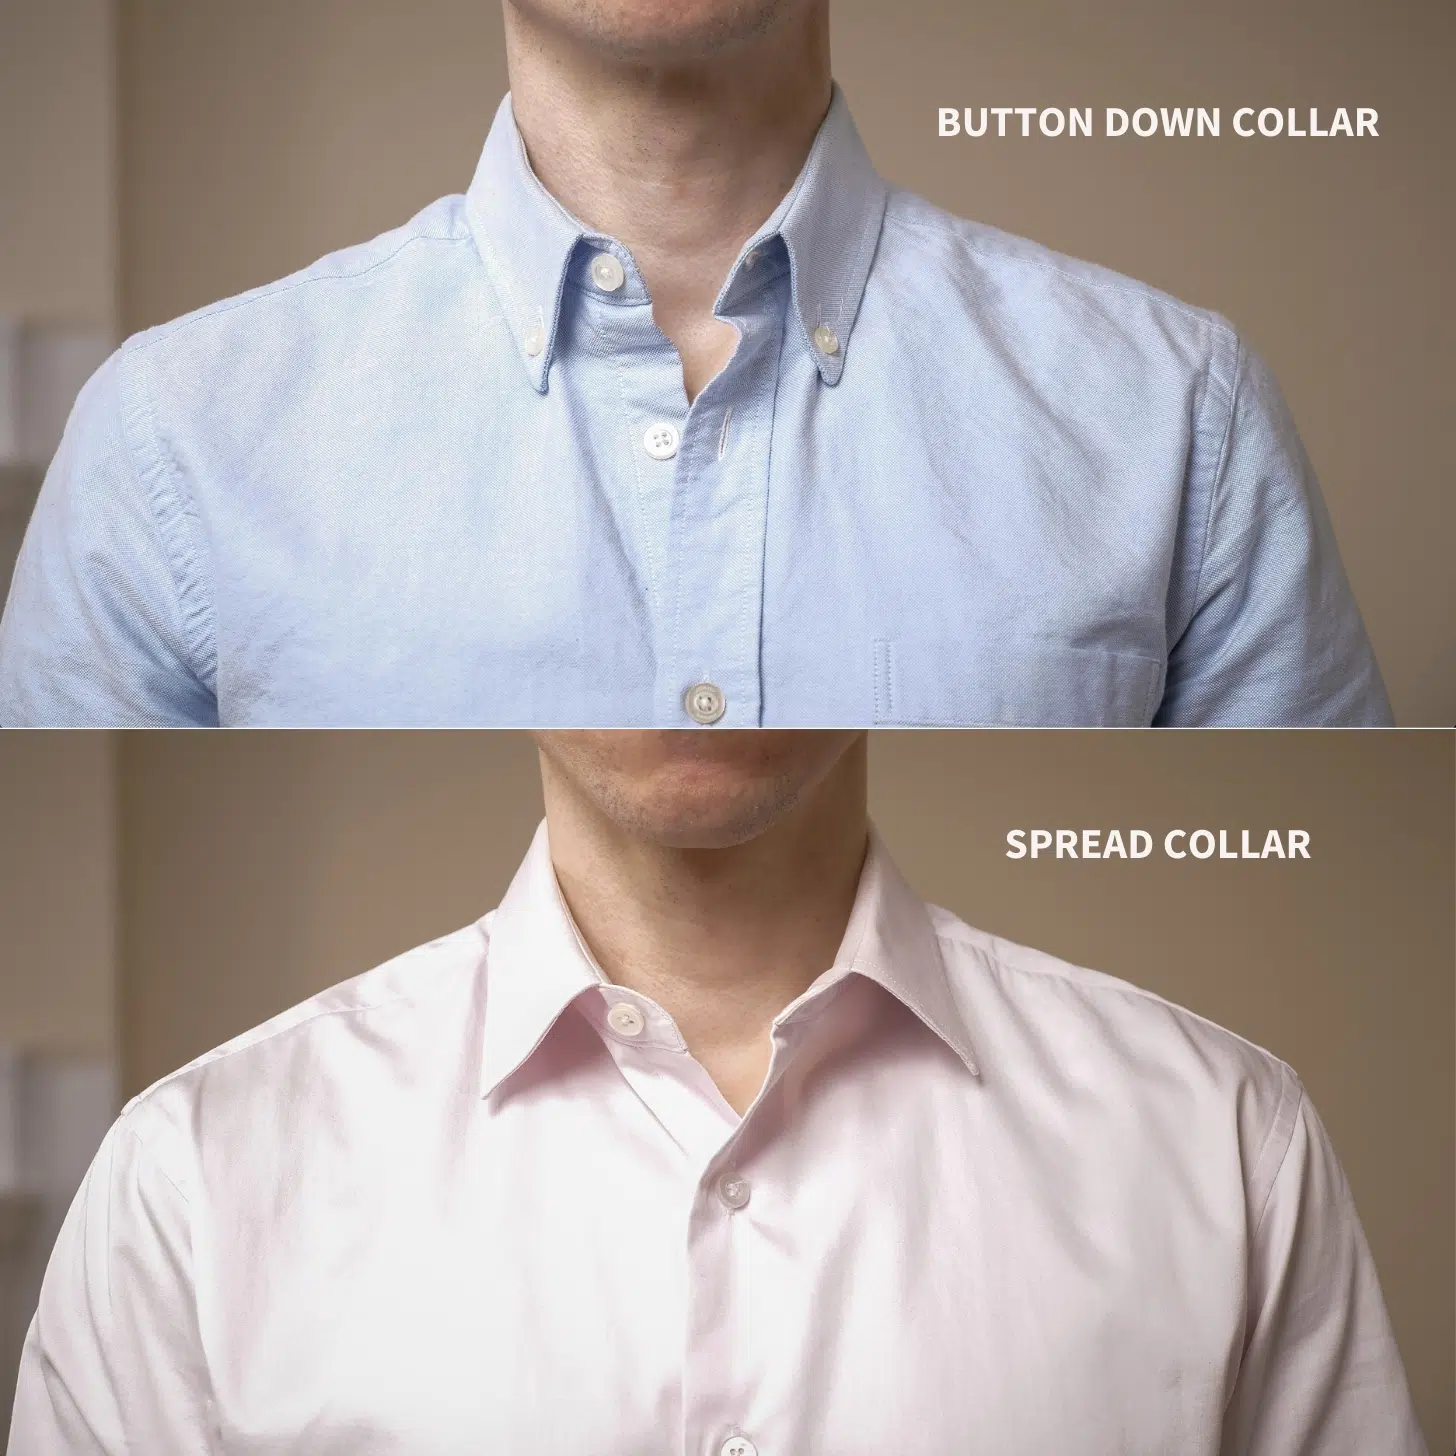 Button down vs spread collar